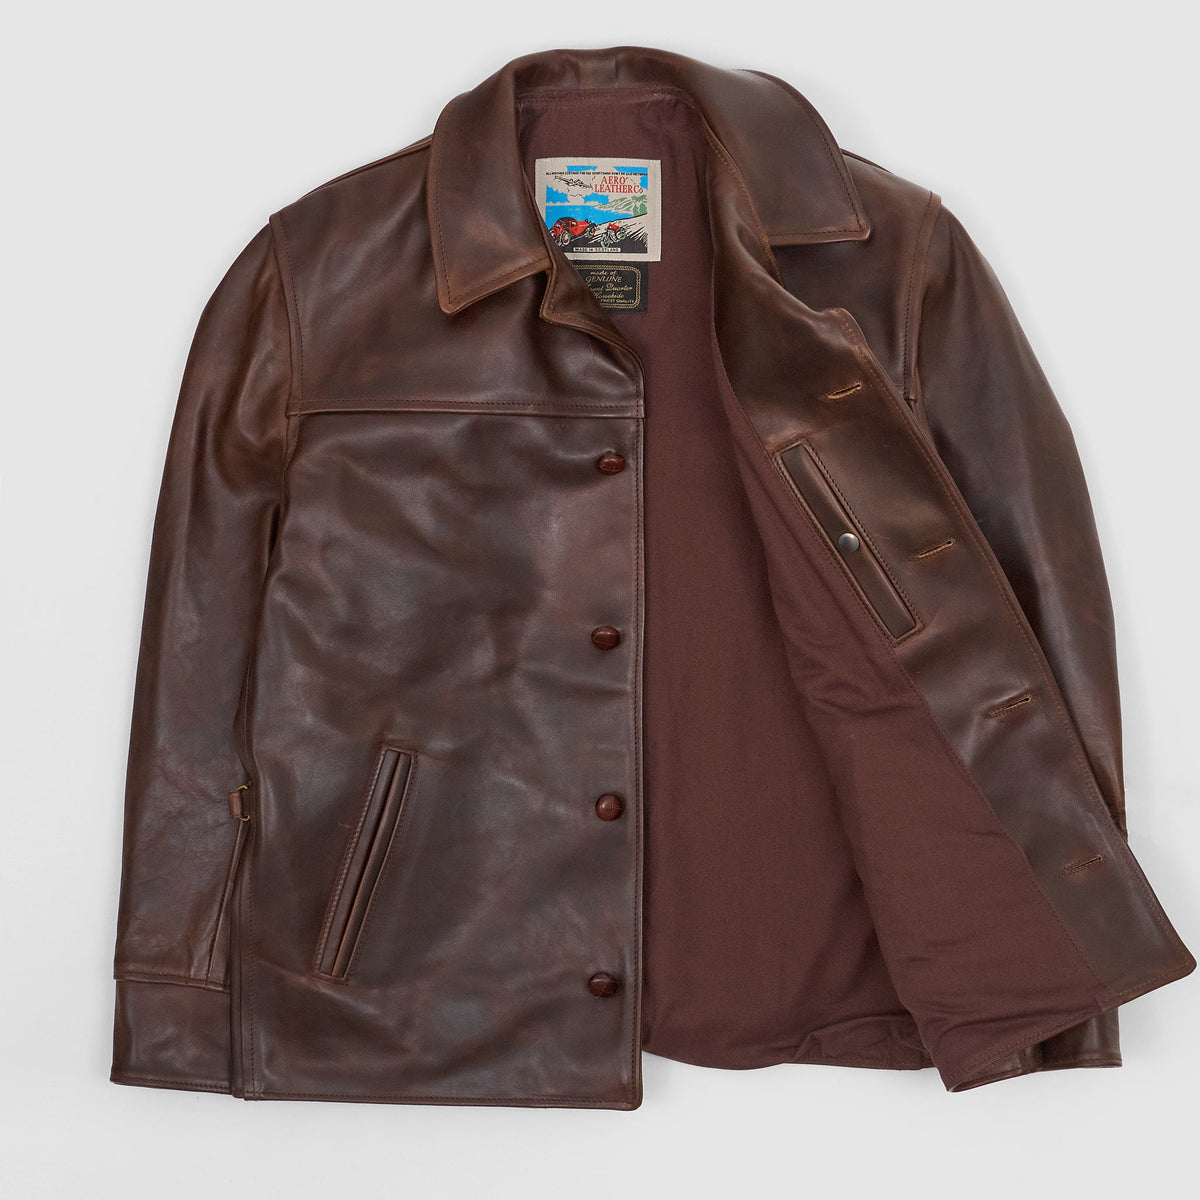 Aero Leathers Teamster Leather Jacket